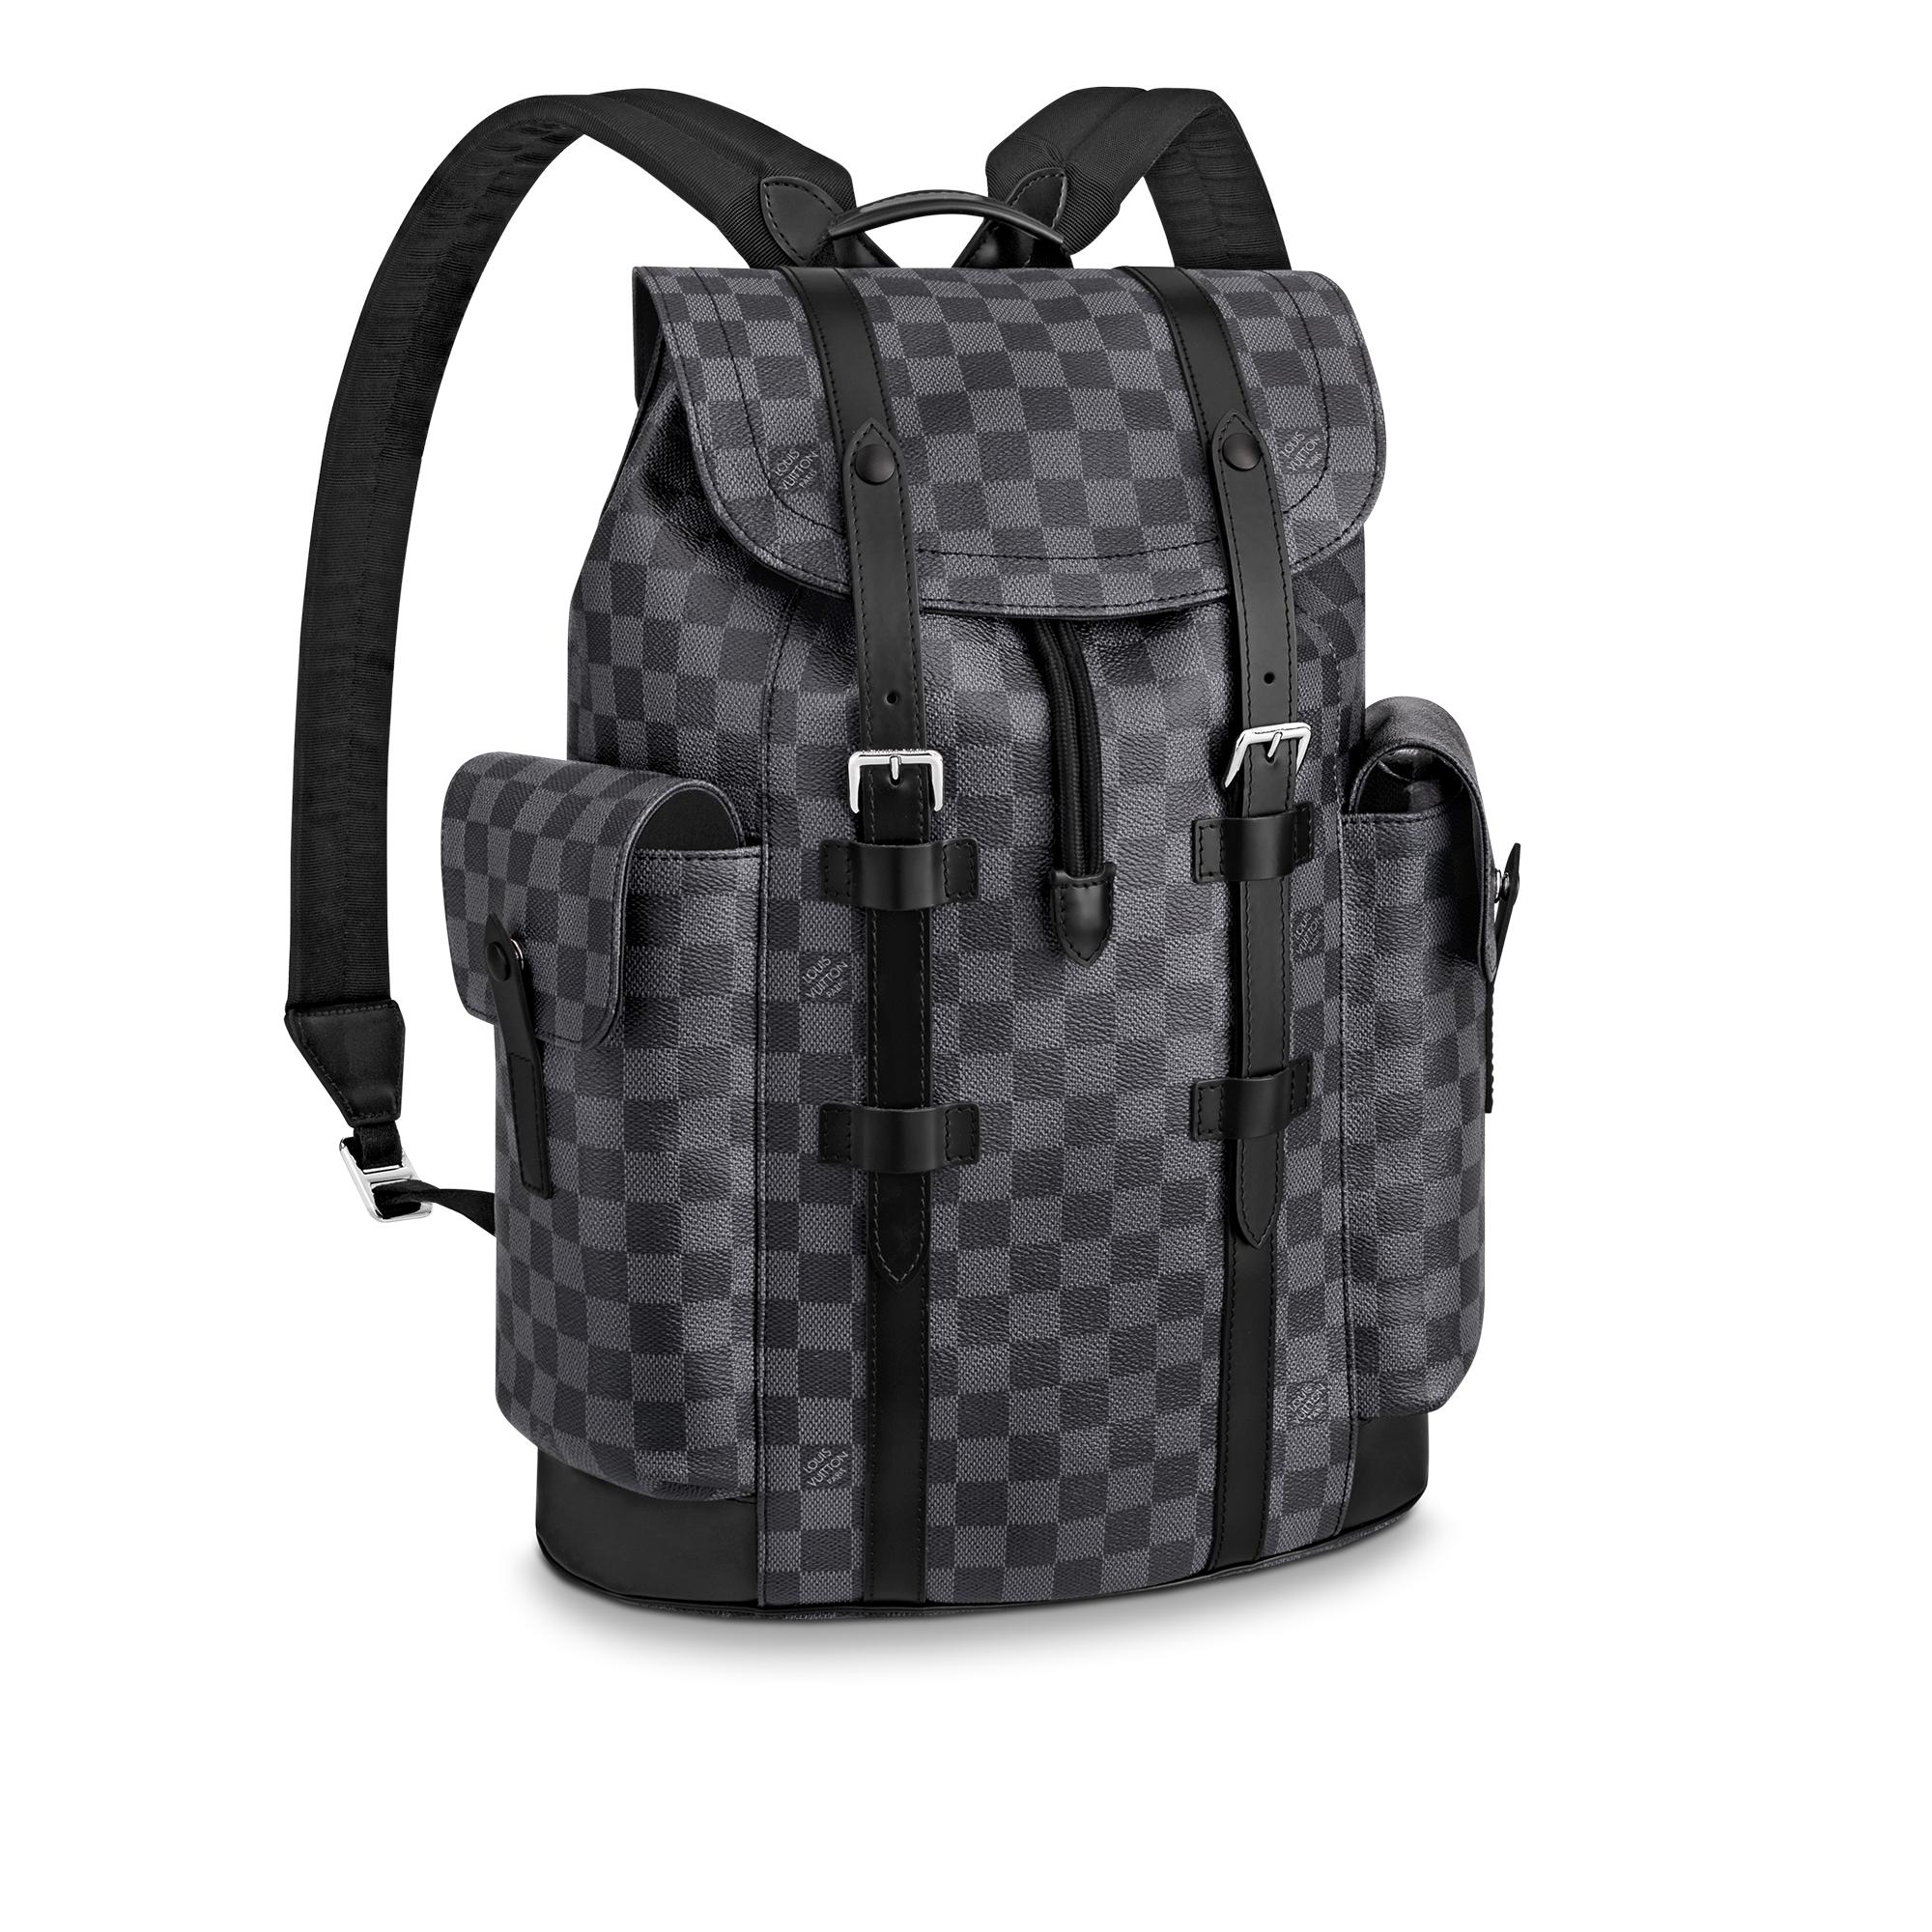 Mochila Louis Vuitton Black  Luis vuitton backpack, Louis vuitton backpack,  Louis vuitton